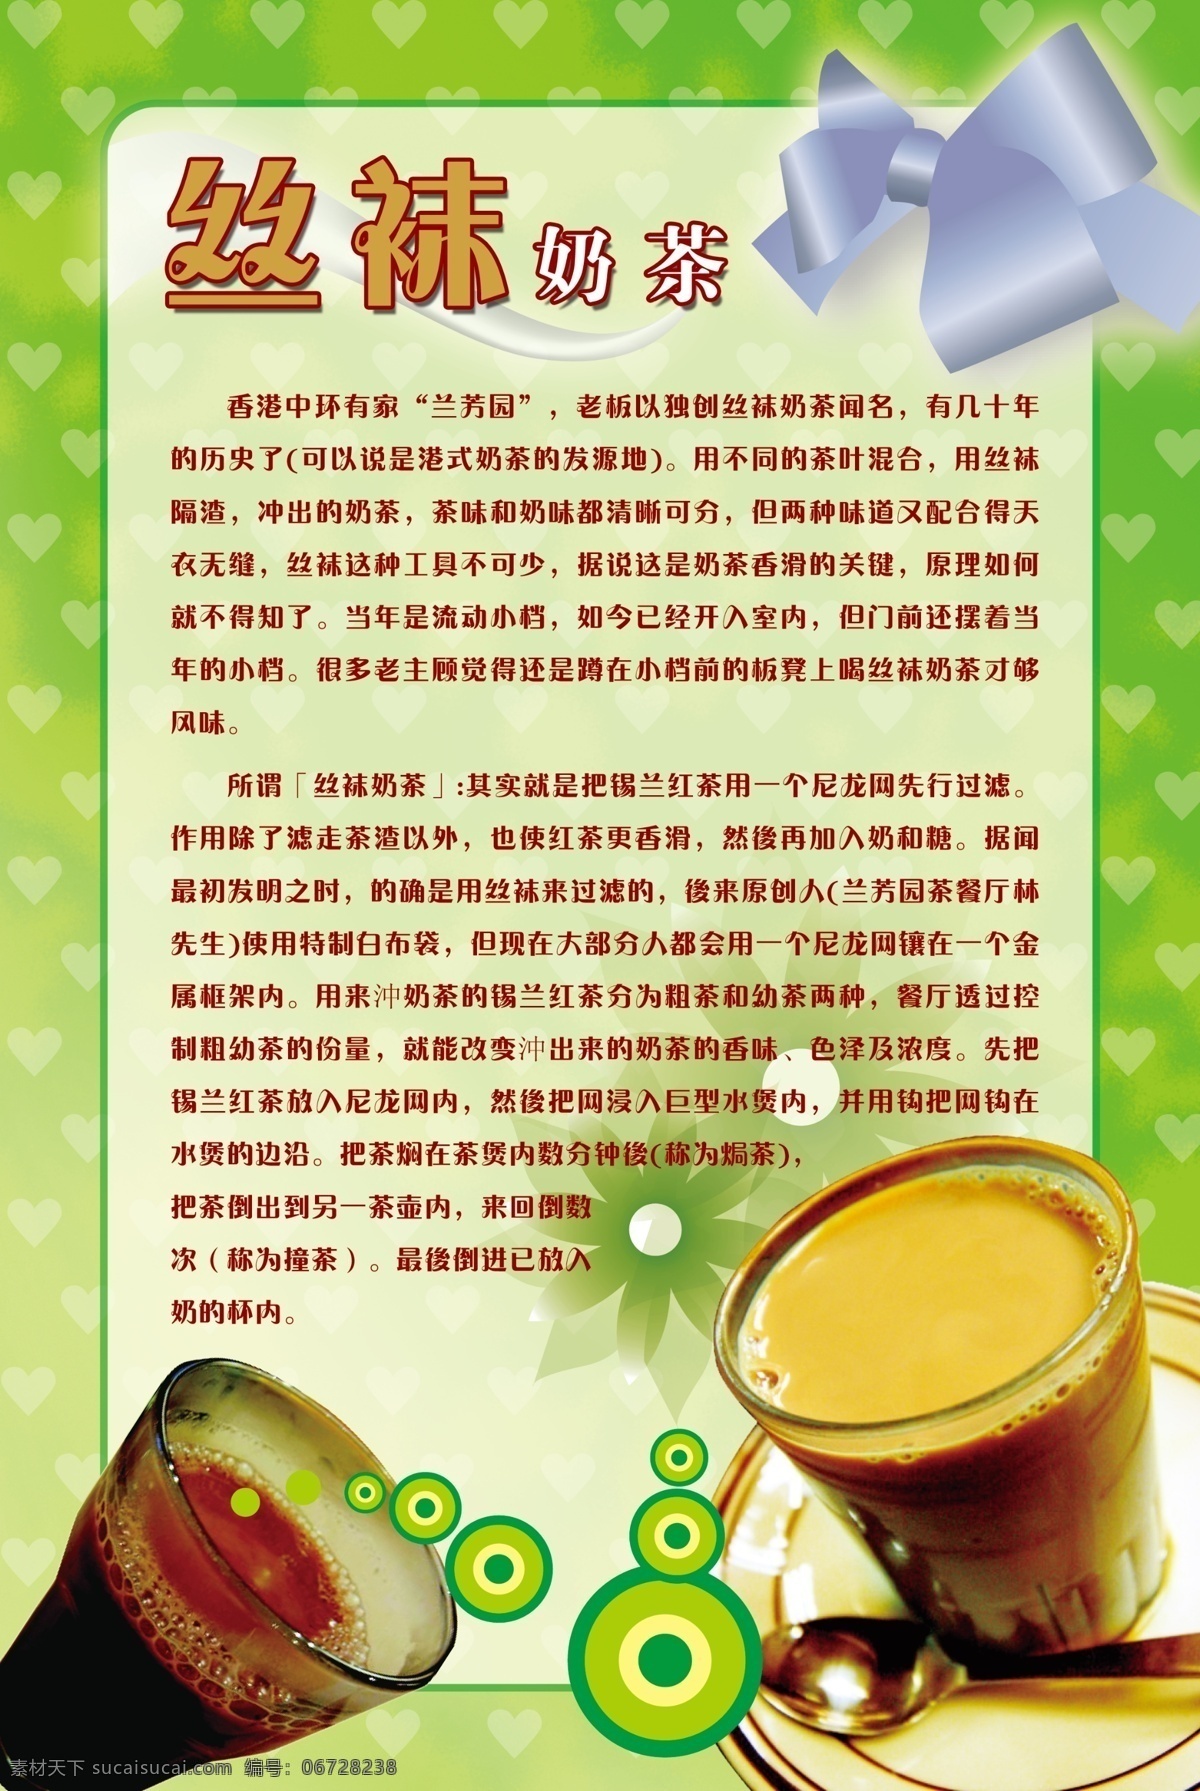 丝袜奶茶简介 丝袜 奶茶 简介 绿色 海报 广告设计模板 源文件